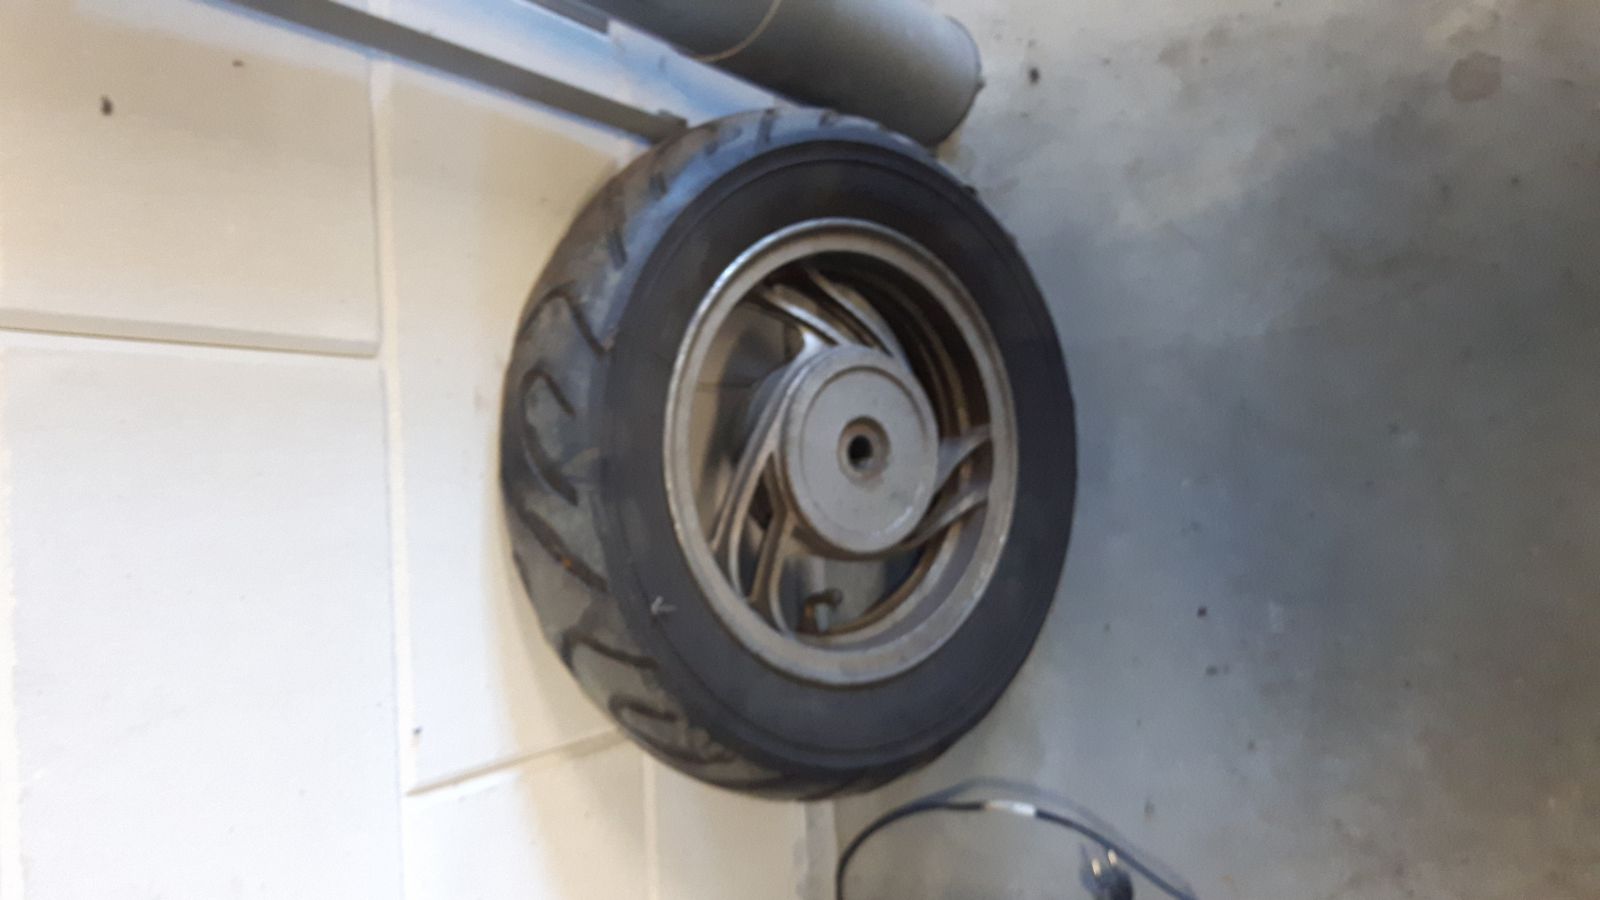 Peugeot V-clic rear wheel and tire